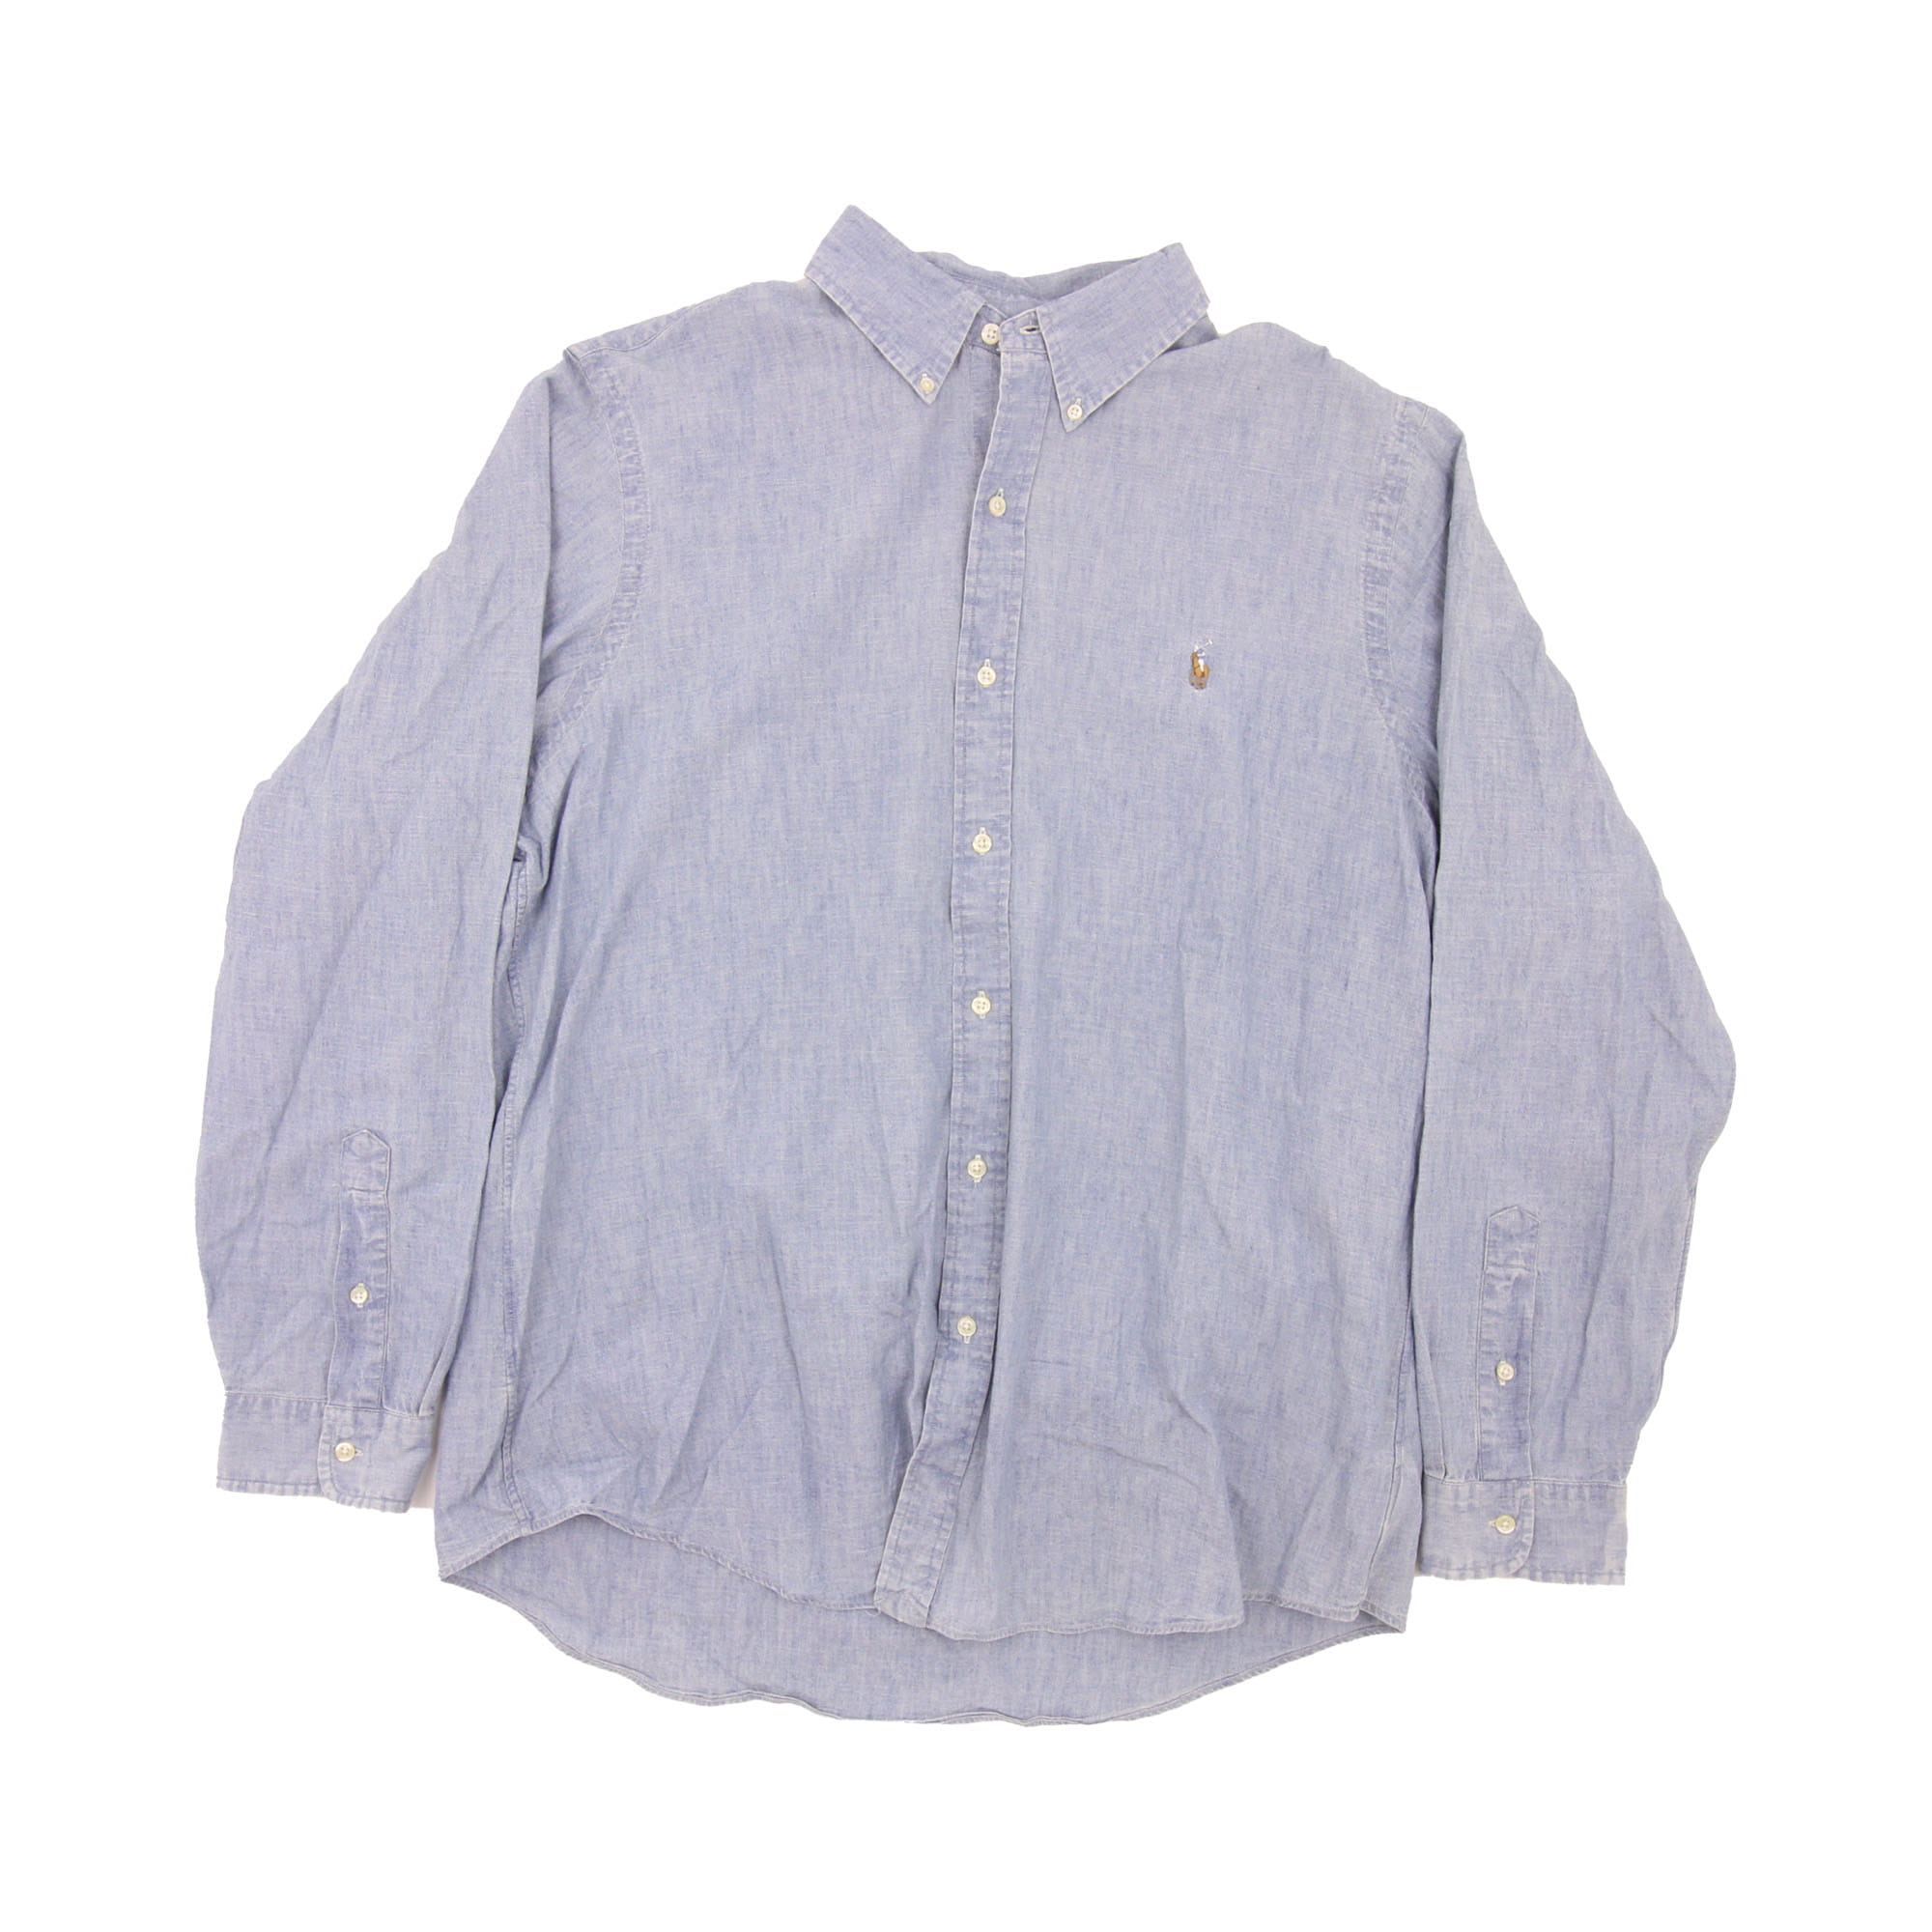 Polo Ralp Lauren Long Sleeve Shirt Blue - XL 